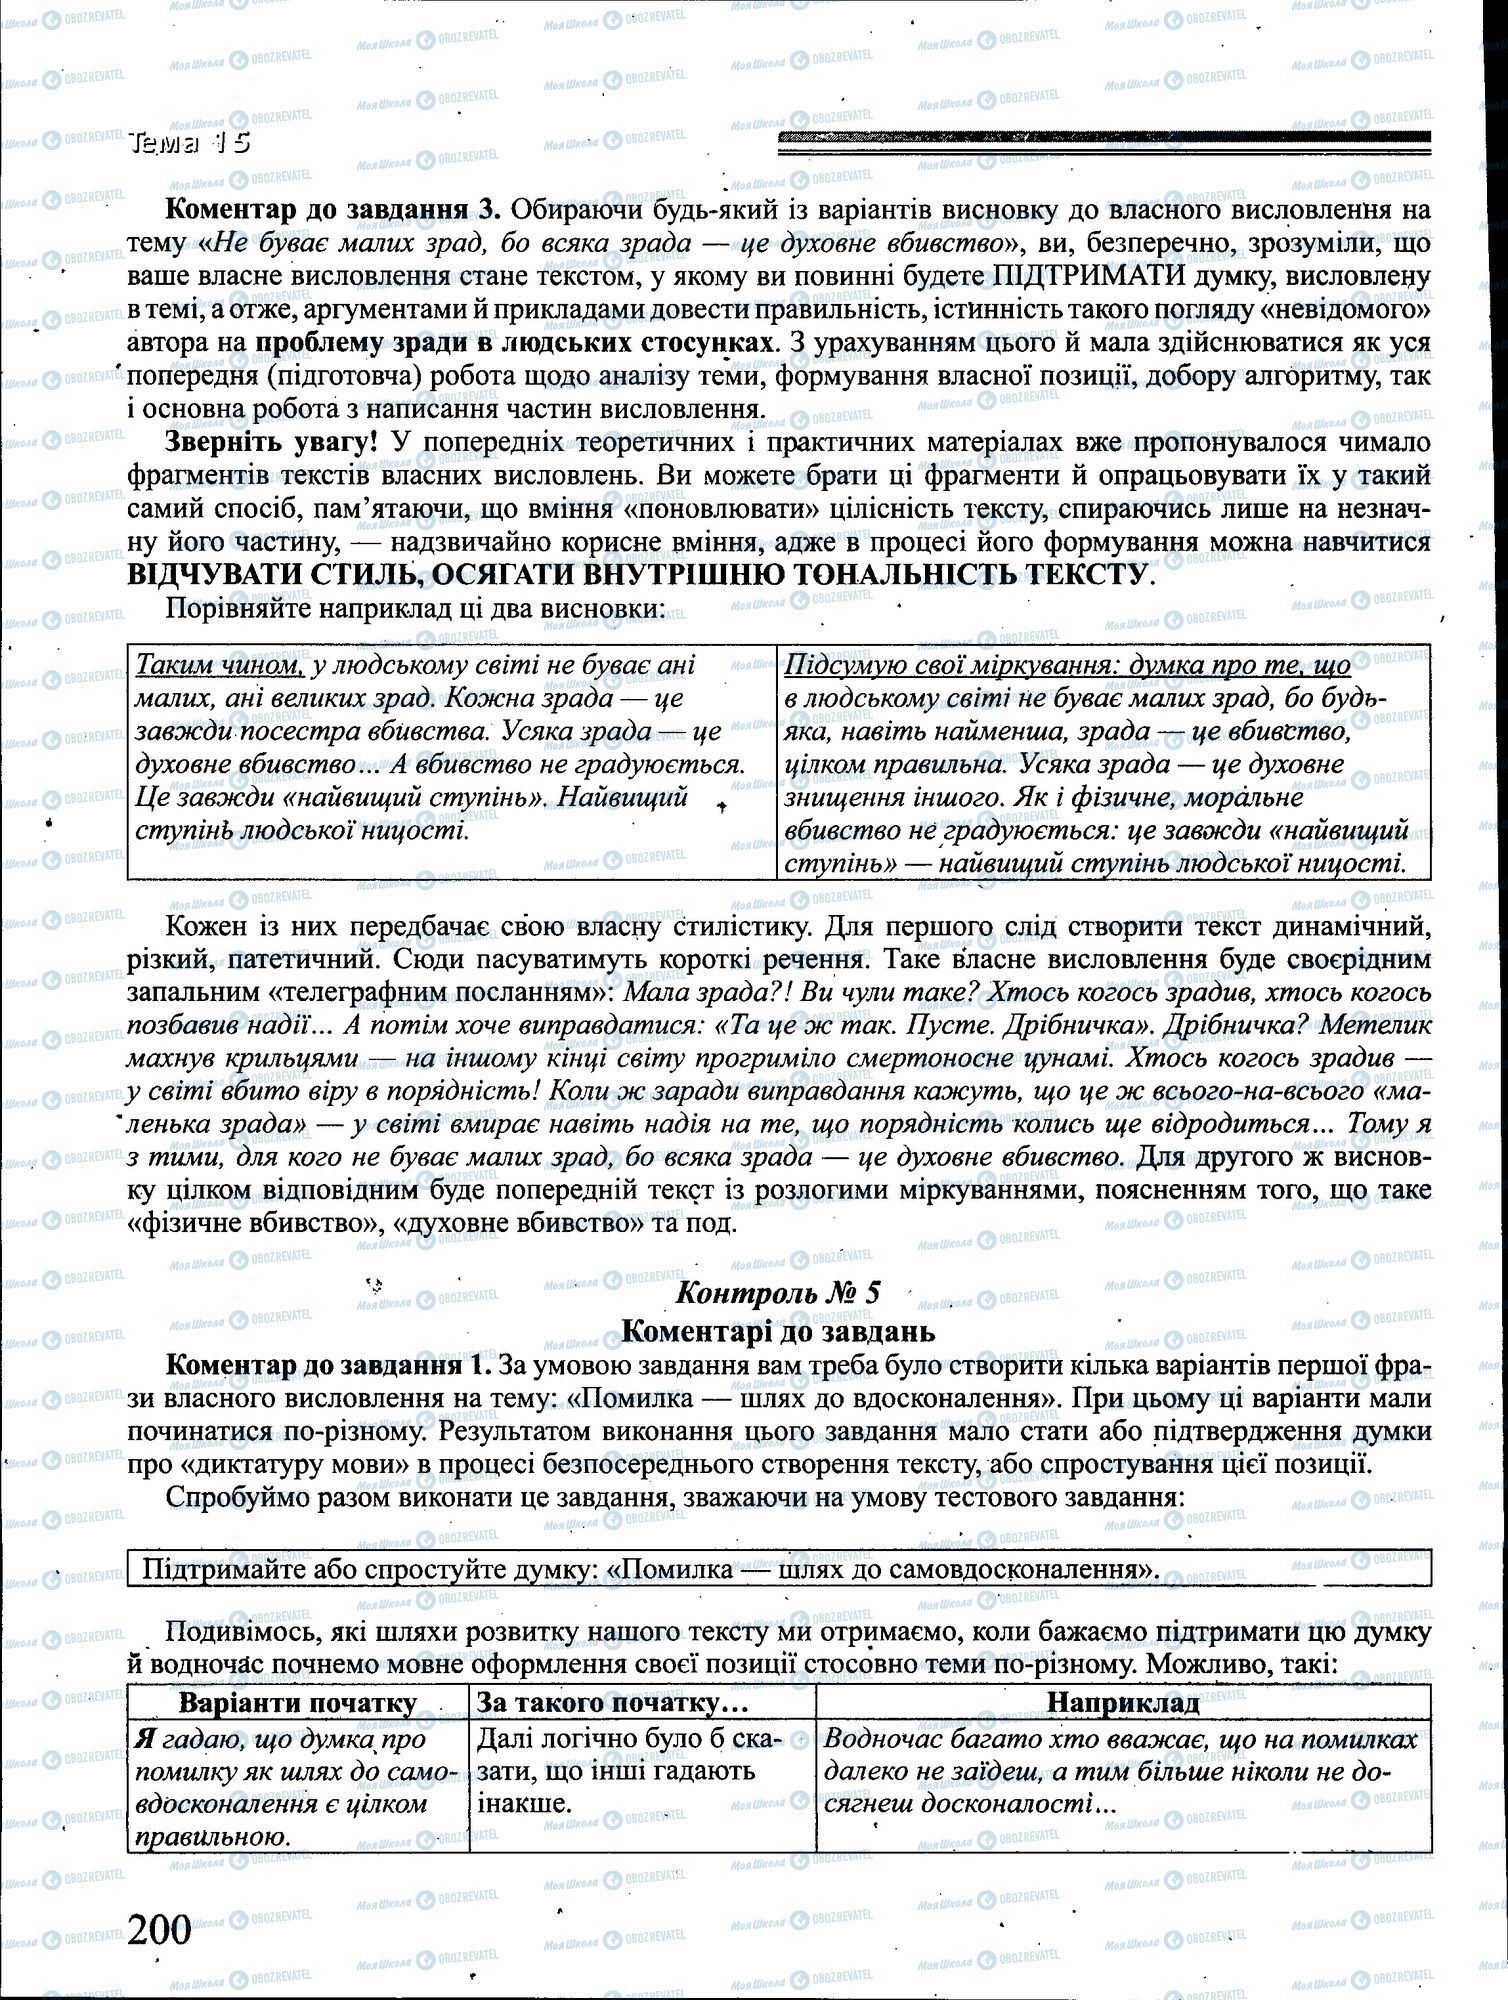 ДПА Укр мова 4 класс страница 200